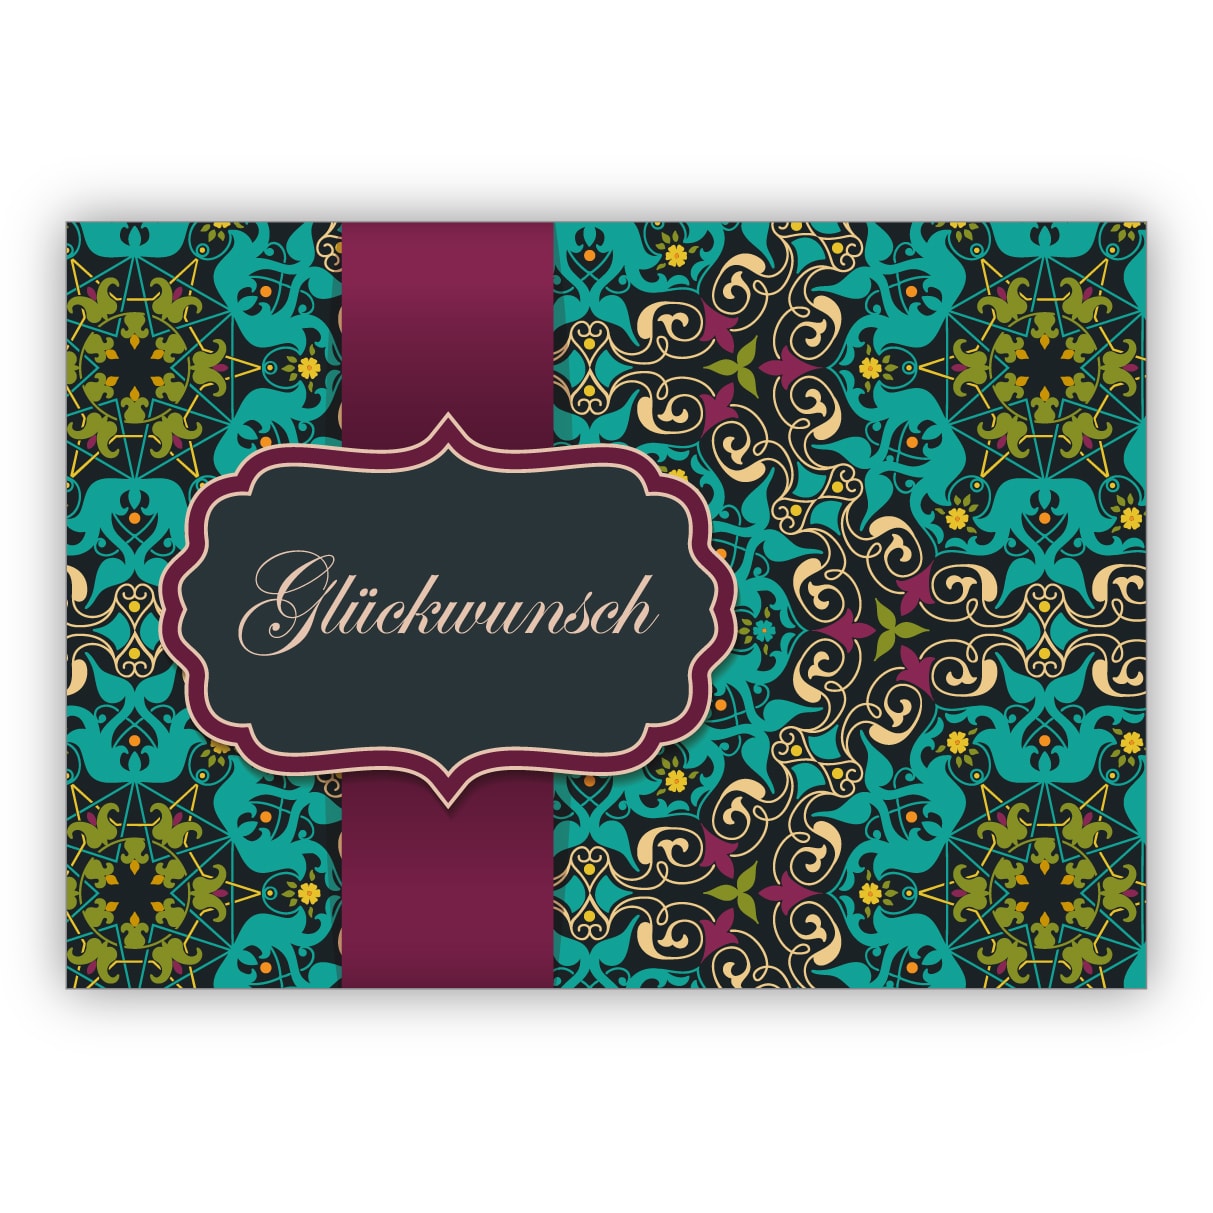 Elegante Grußkarte als Glückwunsch mit arabischem Muster im orientalischen Stil, hellblau türkis: Glückwunsch